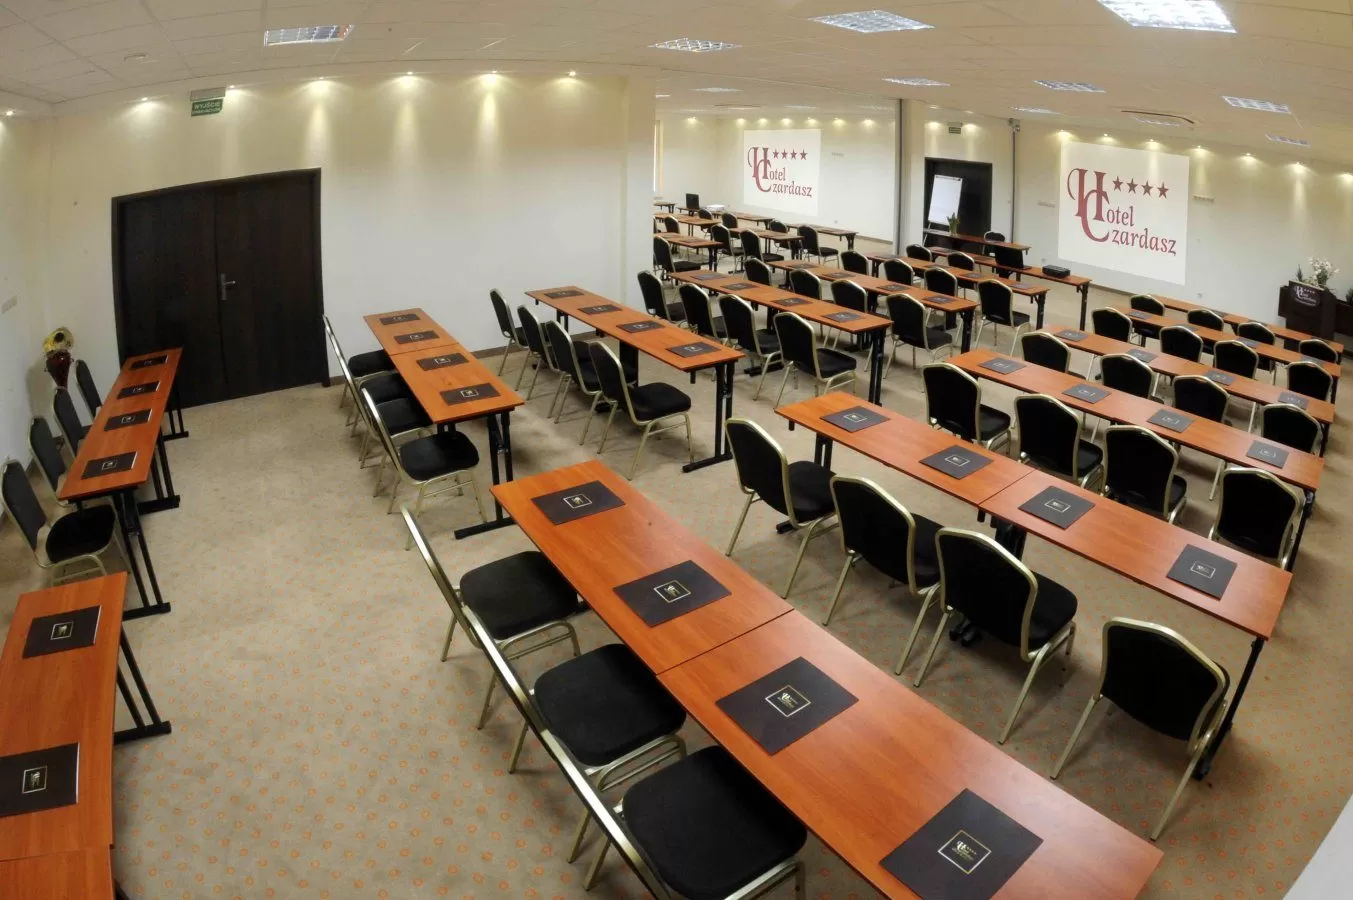 Jak wyposażone są sale konferencyjne w hotelu Czardasz?